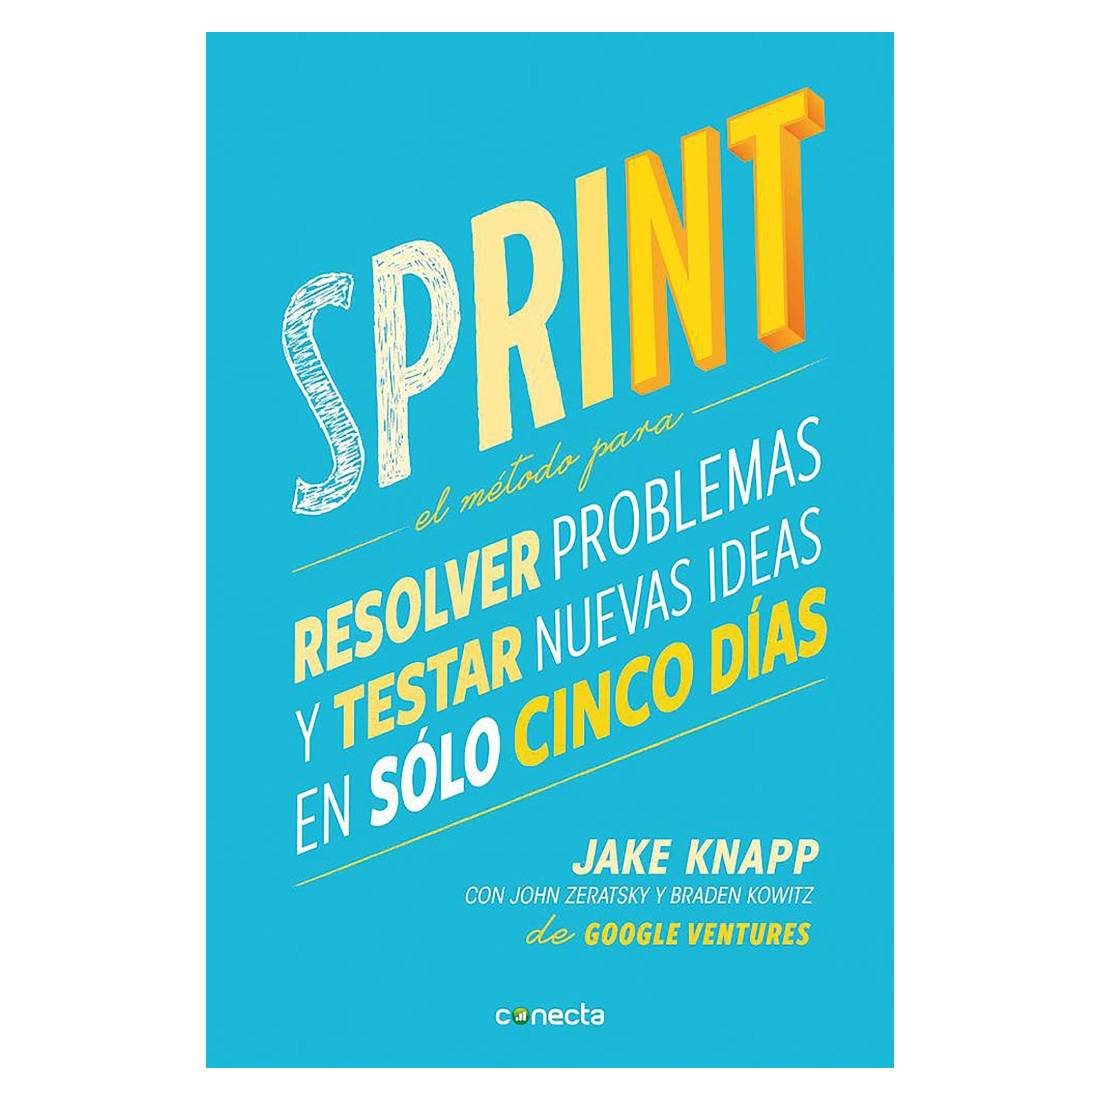 Libro Pasta Blanda: Sprint: El método para resolver problemas y testar nuevas ideas en solo 5 días